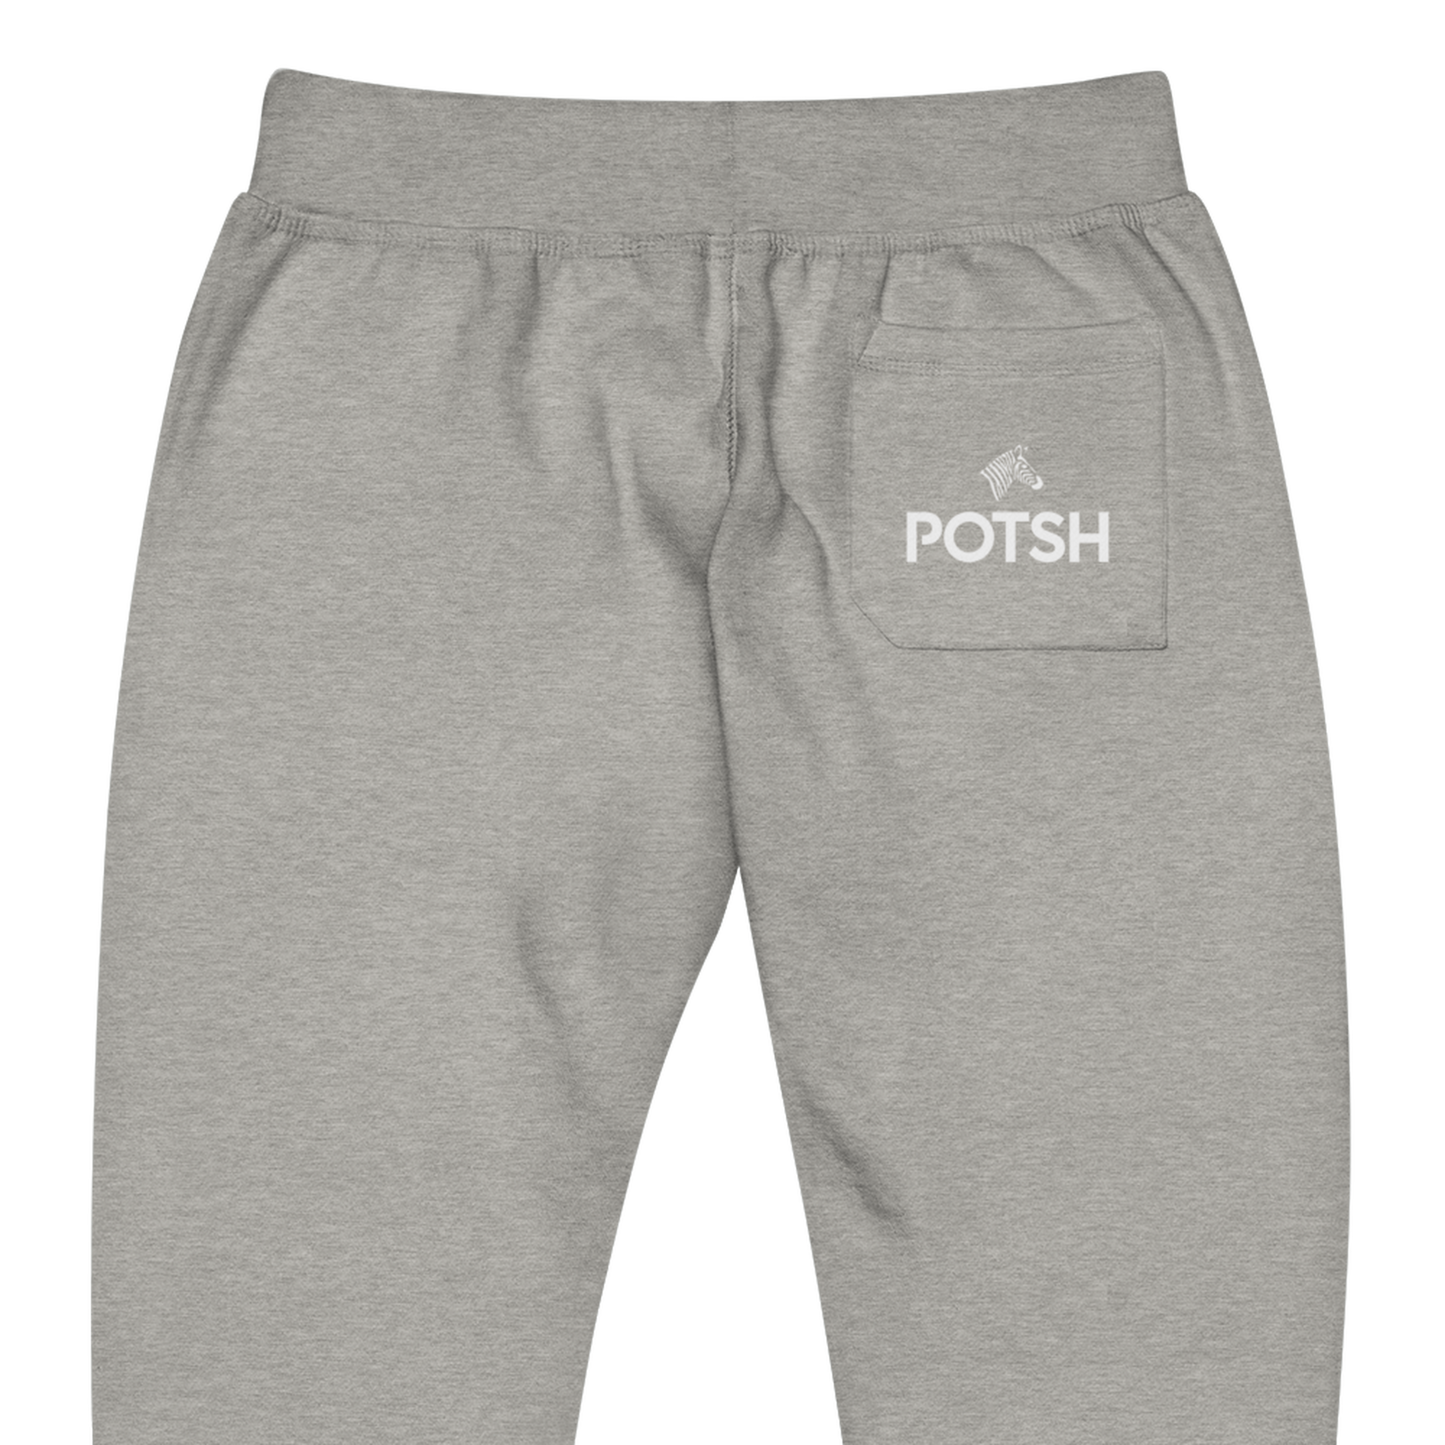 Men's Fleece Sweatpants with POTSH Back Pocket (Multiple Colors Available)